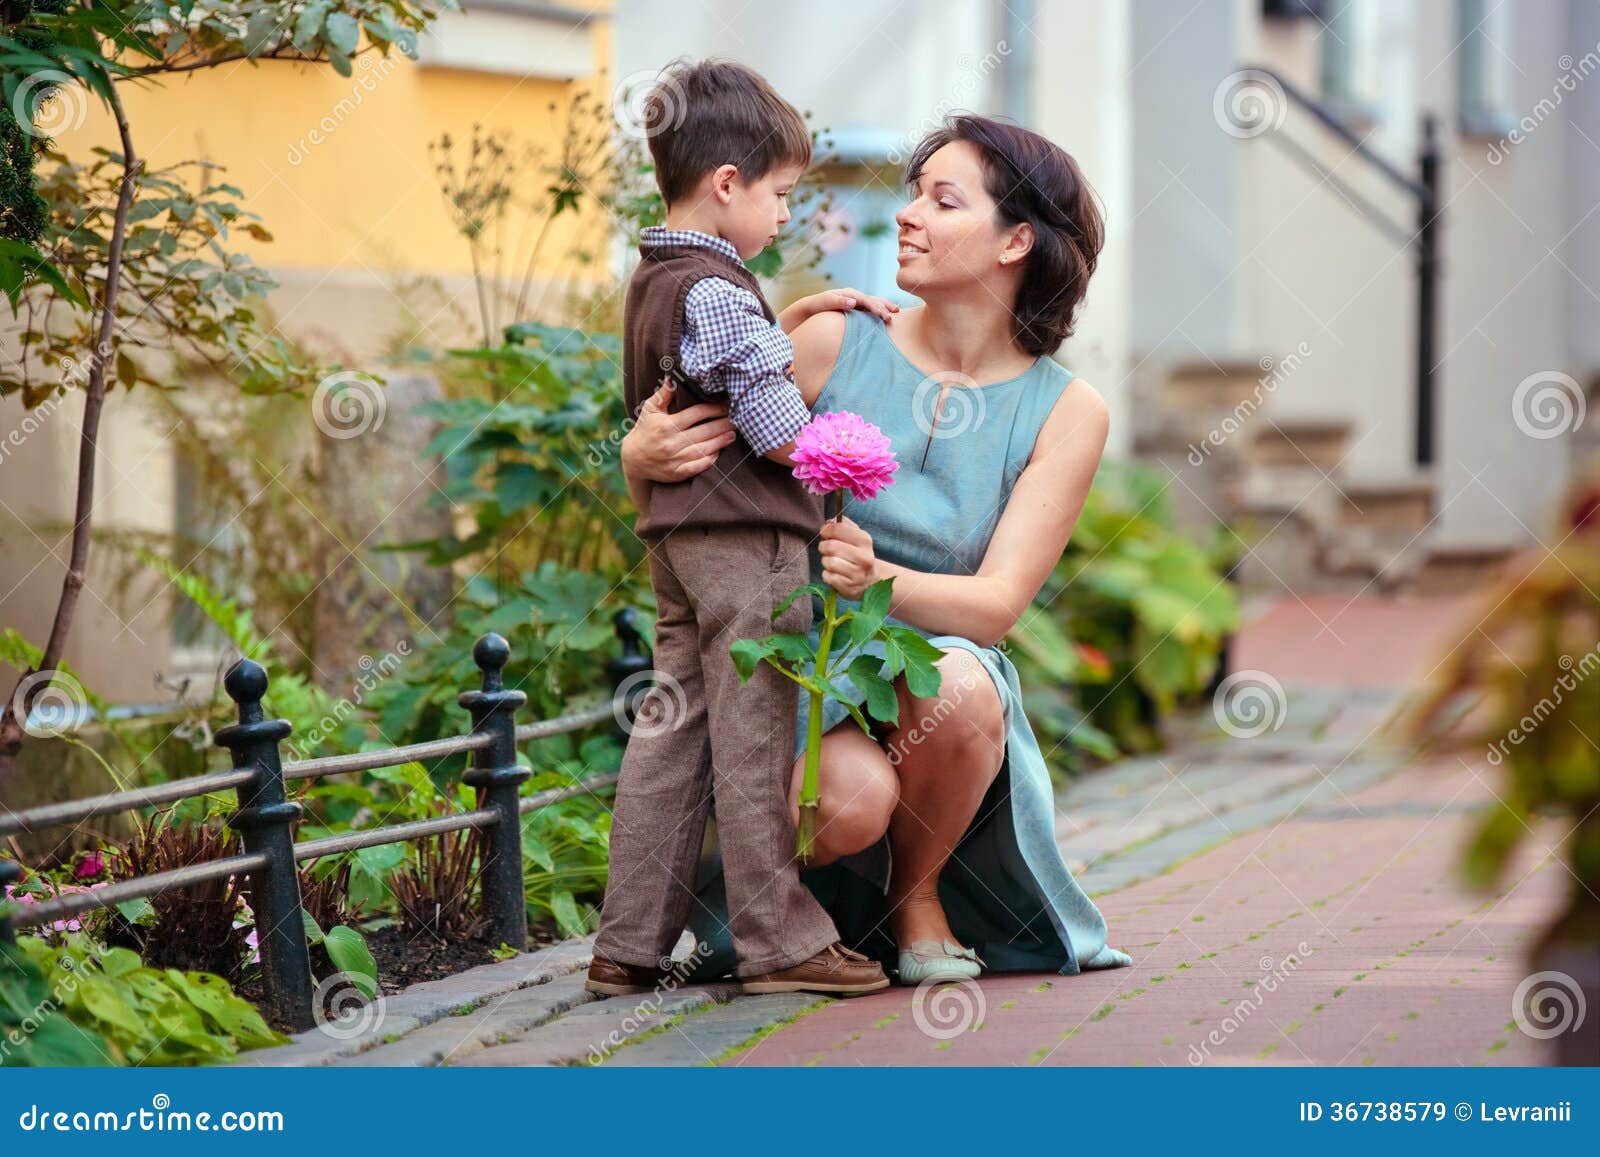 Сын и дочь дают мать. Мальчик дарит цветы маме. Сын дарит маме цветы. Мальчик дарит розу маме. Маленький мальчик дарит цветы.